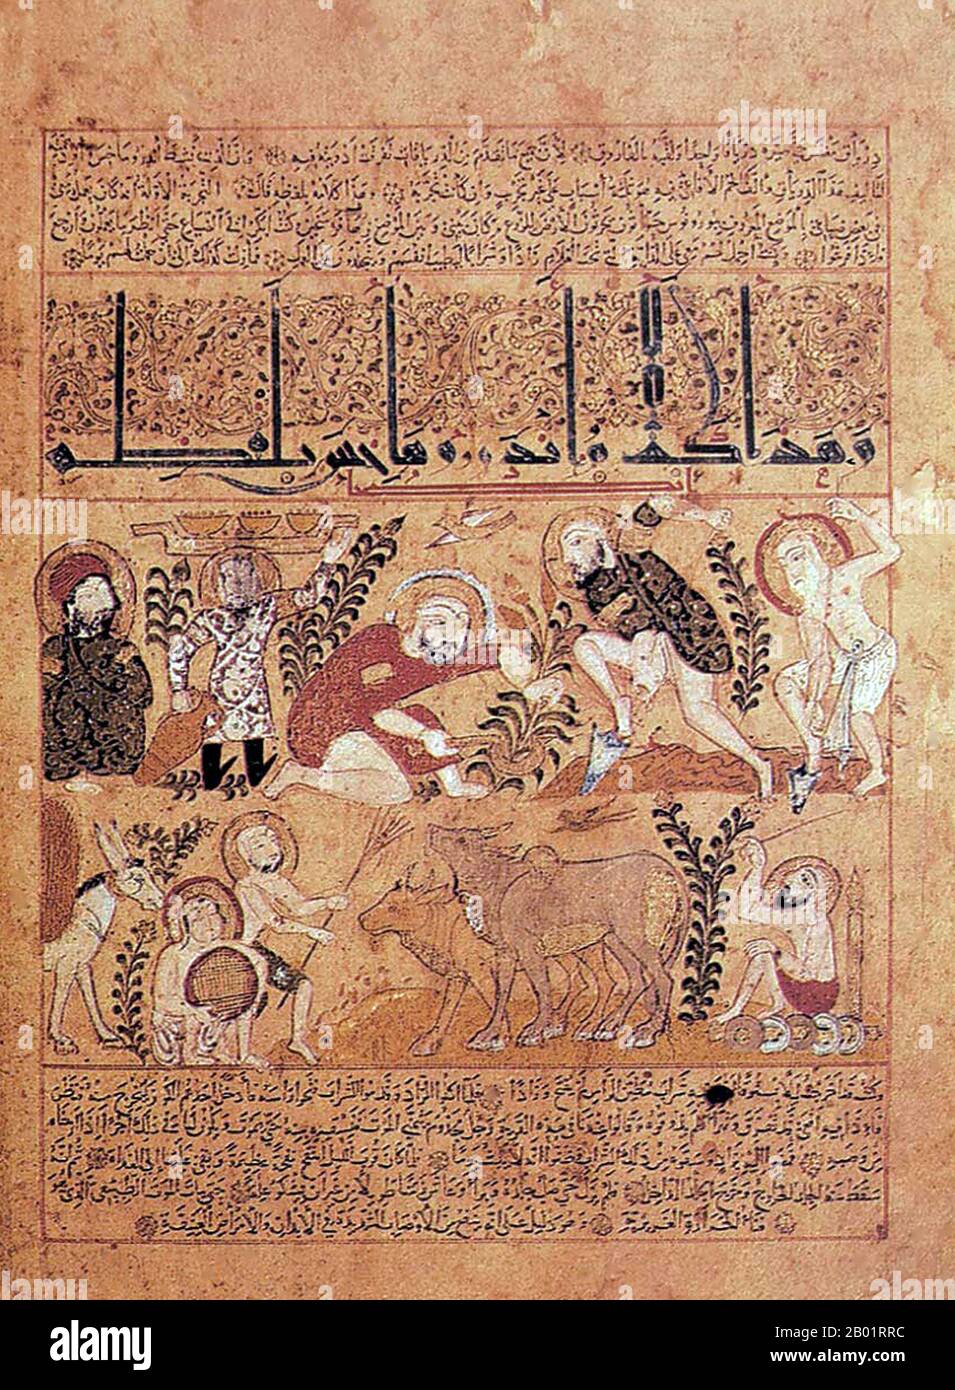 Irak : le médecin Andromakhos observe diverses activités agricoles. Folio enluminé du 'Kitab al-Diryaq' (Livre des antidotes) par Pseudo-Galien, École de peinture de Mossoul, 1199. La soi-disant École de peinture de Mossoul fait référence à un style de peinture miniature qui s'est développé dans le nord de l'Irak de la fin du 12e au début du 13e siècle sous le patronage de la dynastie Zangid (1127-1222). Dans la technique et le style, l'école de Mossoul était similaire à la peinture des Turcs Seldjoukides, qui contrôlaient l'Irak à cette époque, mais les artistes de Mossoul avaient un sens plus aigu du réalisme basé sur le sujet. Banque D'Images